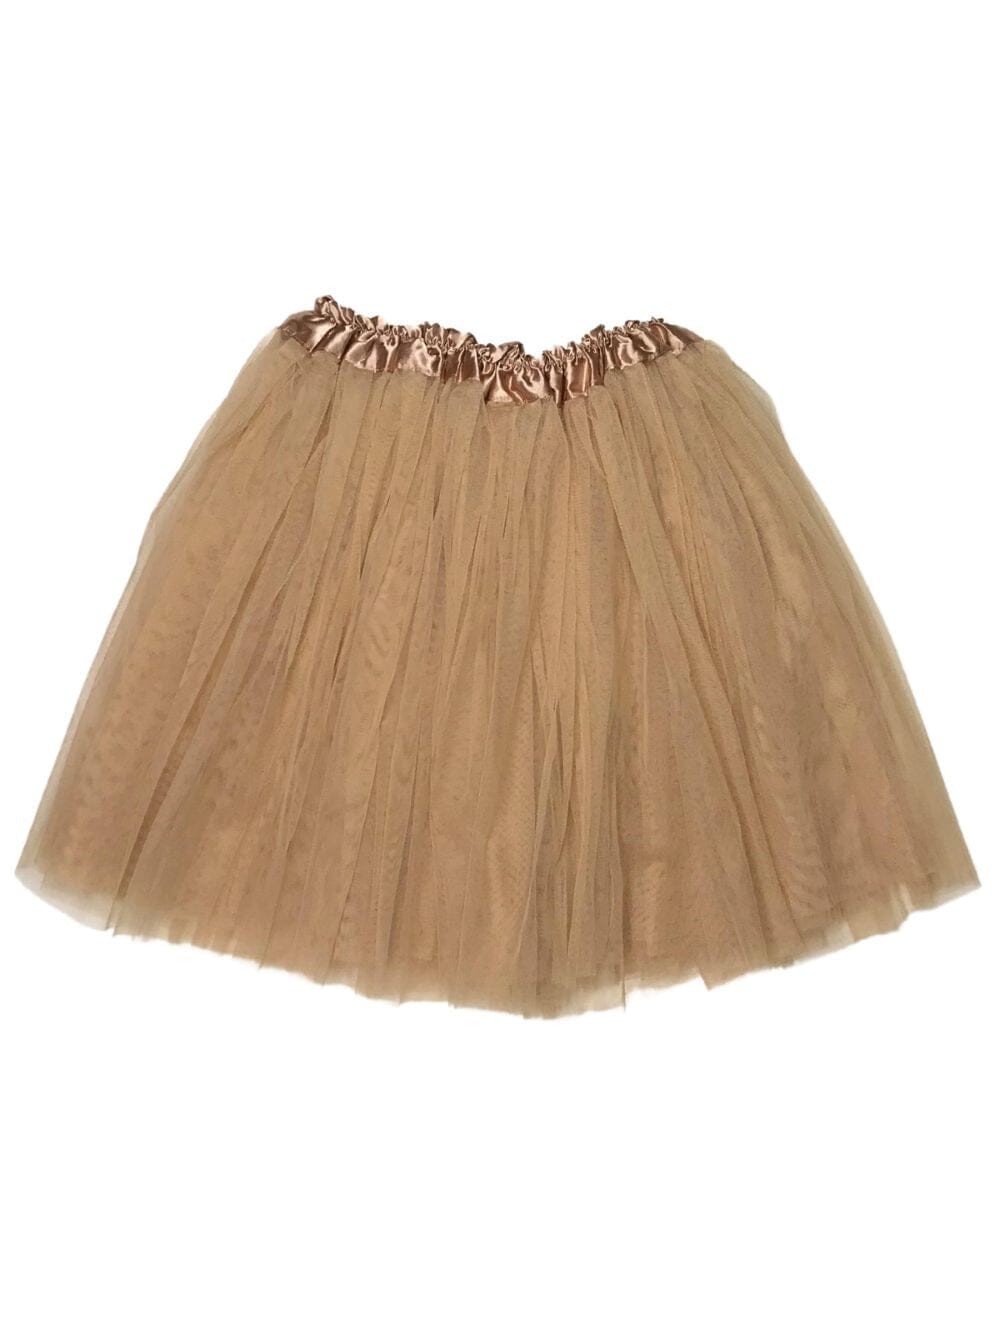 Taupe Tutu Skirt for Adult - Women's Size 3-Layer Tulle Skirt Ballet Costume Dance Tutus - Sydney So Sweet